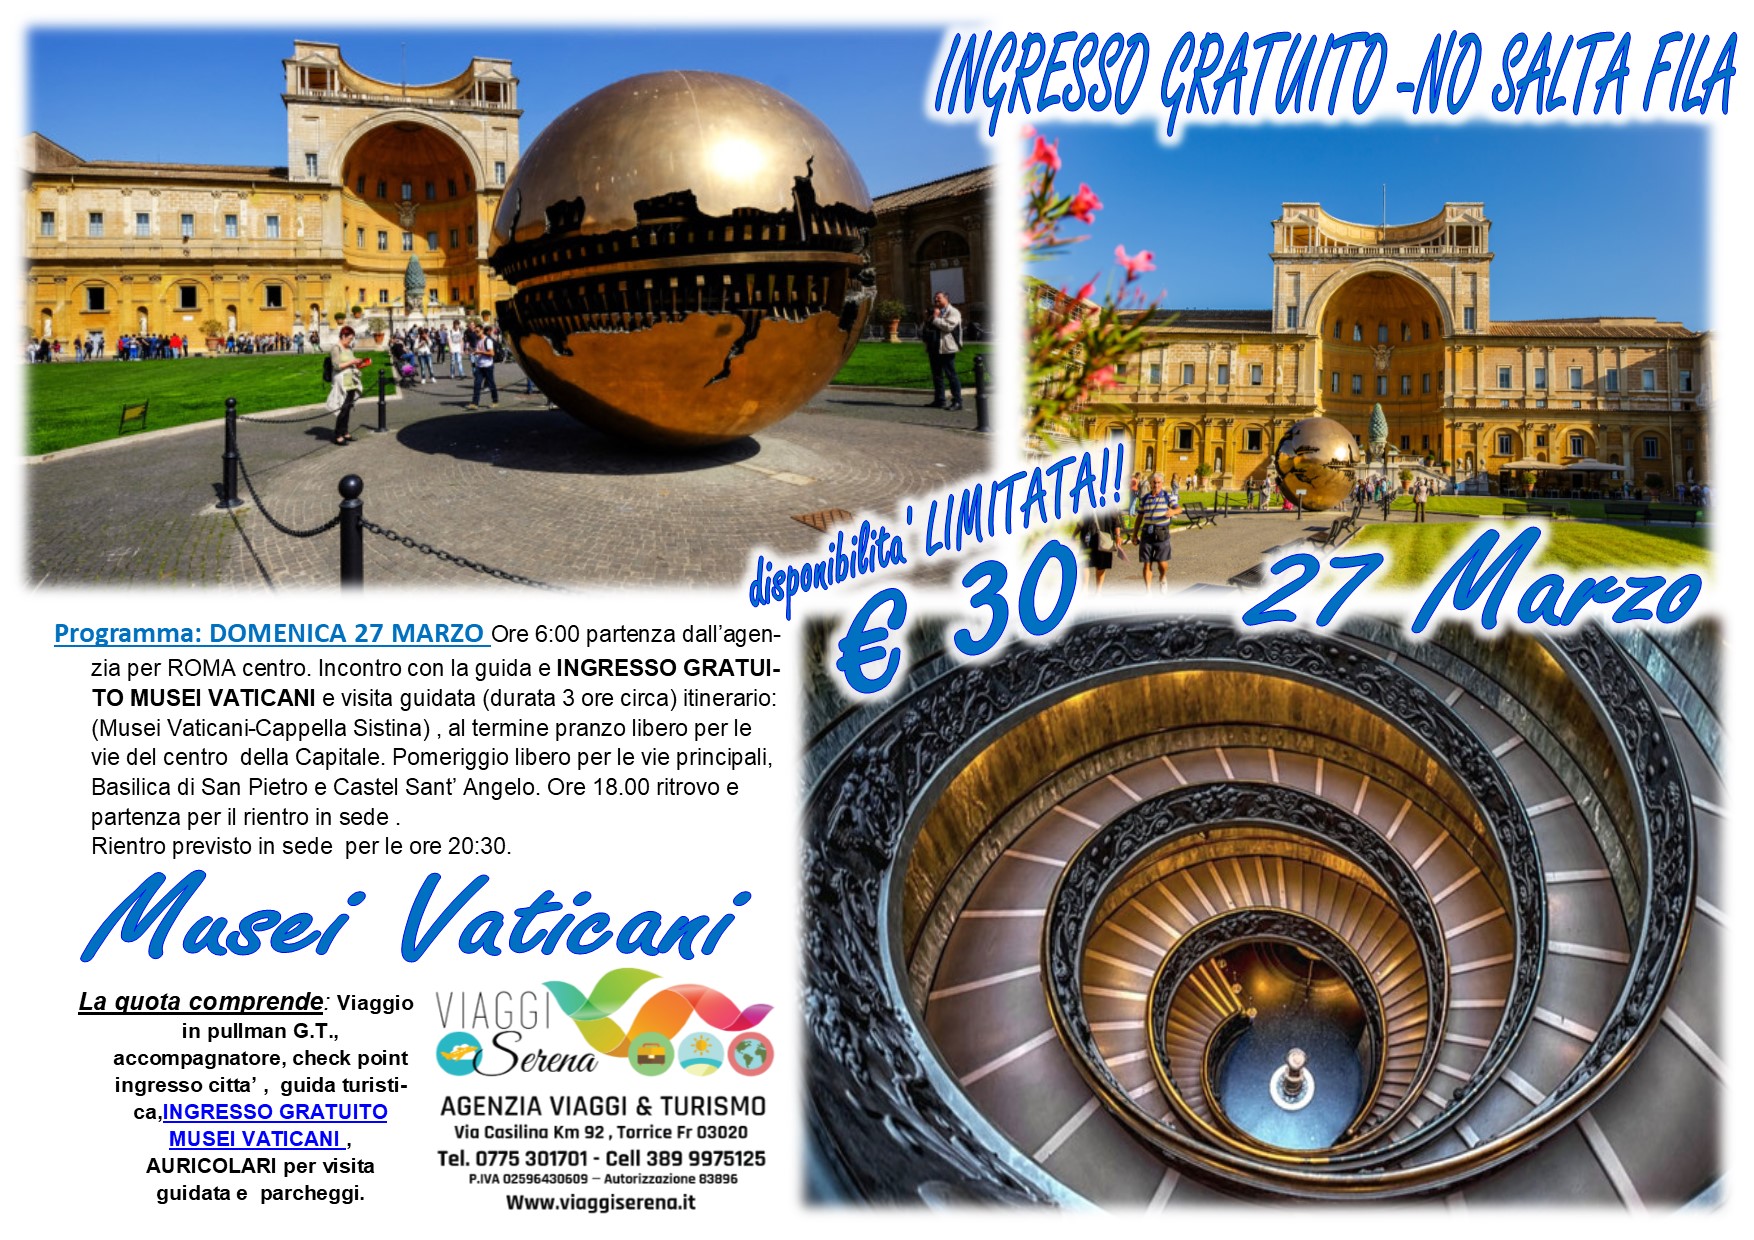 Viaggi di Gruppo: Musei Vaticani “ingresso gratuito” 27 Marzo € 30,00